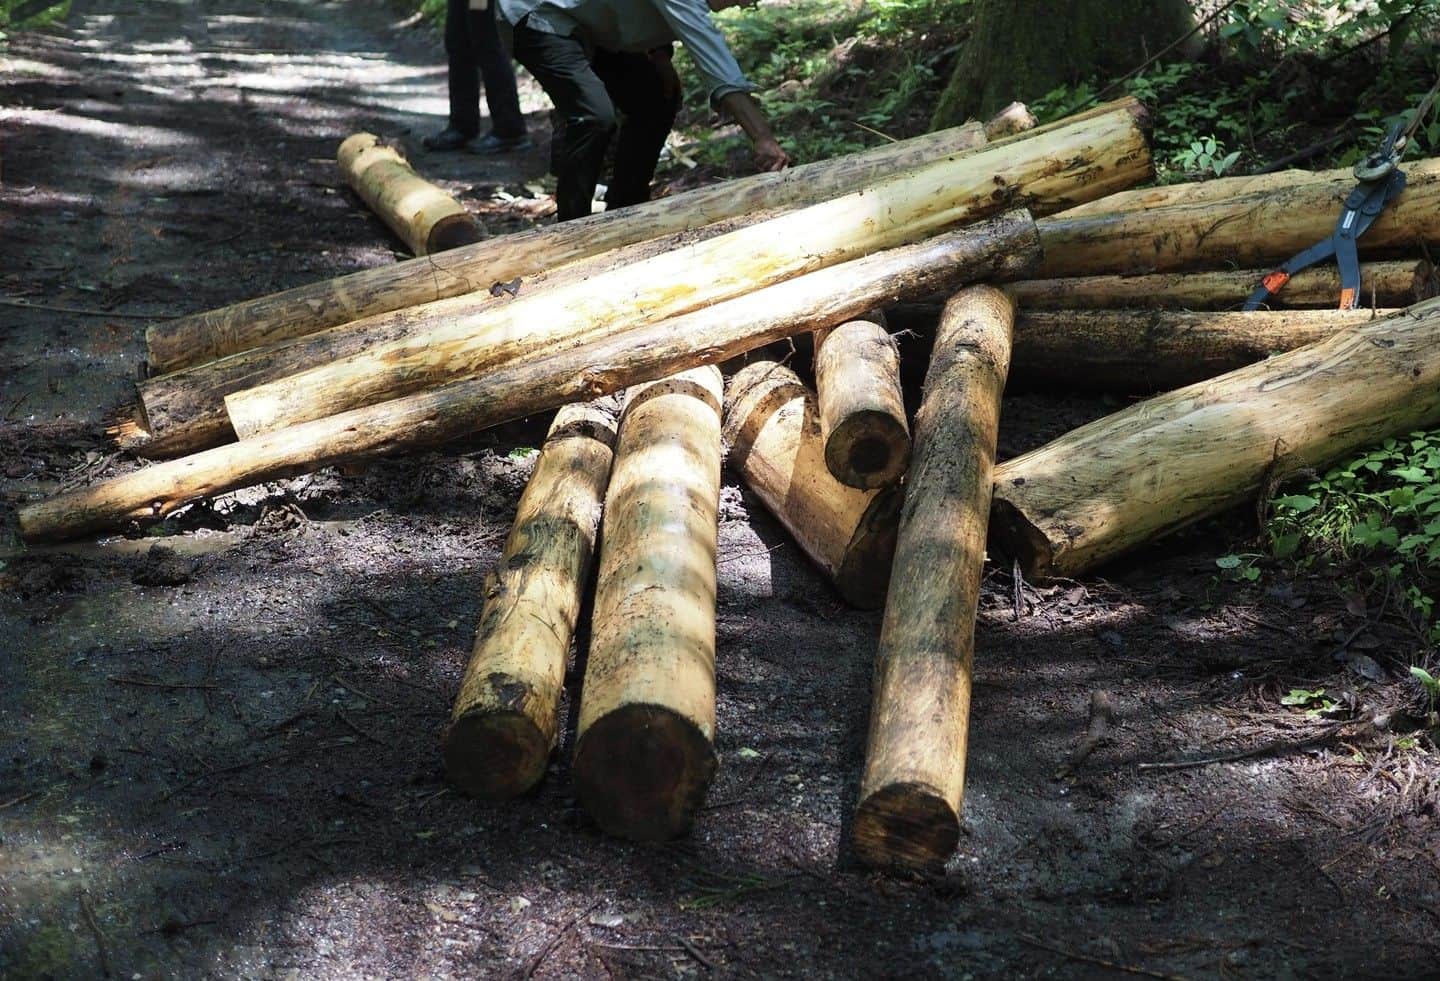 篠原ともえのインスタグラム：「木☞紙☞バッグ完成のプロセス🌲 ｢CLEAN HIKES, GREEN PEAKS MT. TAKAO｣のバッグは原料に高尾の森で伐採された間伐材を用いています。 「間伐」とは植物に自然光が届くよう定期的に実施される伐採のことで、森林を健やかに保つための作業。  ただ私自身も今回の制作を進めていく中で知ったのですが…建築物など資材への利活用に適さない木々や、運搬に手間と費用のかかる巨木などは、森にそのまま残されることも少なくないのだそう🪵....  どうにか再生させ、またこの地へ還元できないか。八王子芸術祭のスタッフさんに、バッグの制作をご提案したところ、地元林業の方にも賛同とご協力をいただき、樹齢50年にも及ぶ杉の木を受け取ることができました。  余りがなるべくでないよう四角いゴミ袋を想起させるトラッシュバッグのデザインに。裁断された部分はタグなどに活用しました✂️ 木が紙へと生まれ変わってゆく制作プロセスは私も発見がいっぱい💡朝日デジタルコラム「アイデアのありか」に執筆いたしました。本日公開！ご興味のある方はプロフィールからジャンプできます✒️  篠原ともえアートプロジェクト🌲間伐材バッグ無料配布 ｢CLEAN HIKES, GREEN PEAKS MT. TAKAO｣ 配布期間：9月26日（火）～ 10/4（水）10:00 ～ 16:00 ＊1日150個限定 10月2日（月）の休館日除く 会場：東京都高尾ビジターセンター（高尾山山項）  #CLEANHIKESGREENPEAKS @hachiojiartfes」